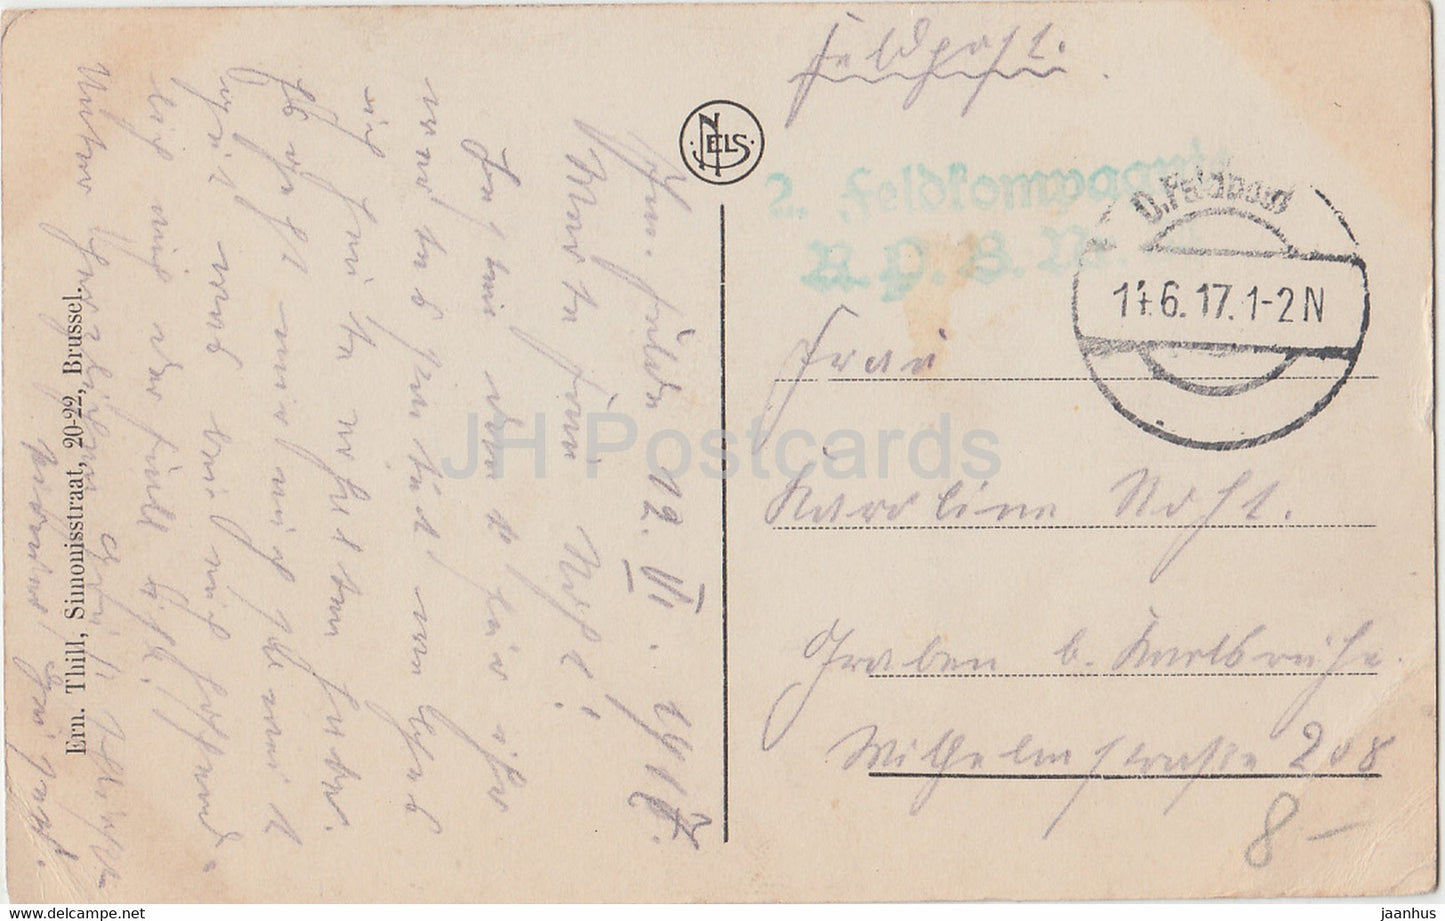 Heyst - Heist - Gedeelte van den Dijk - Feldpost - old postcard - 1917 - Belgium - used